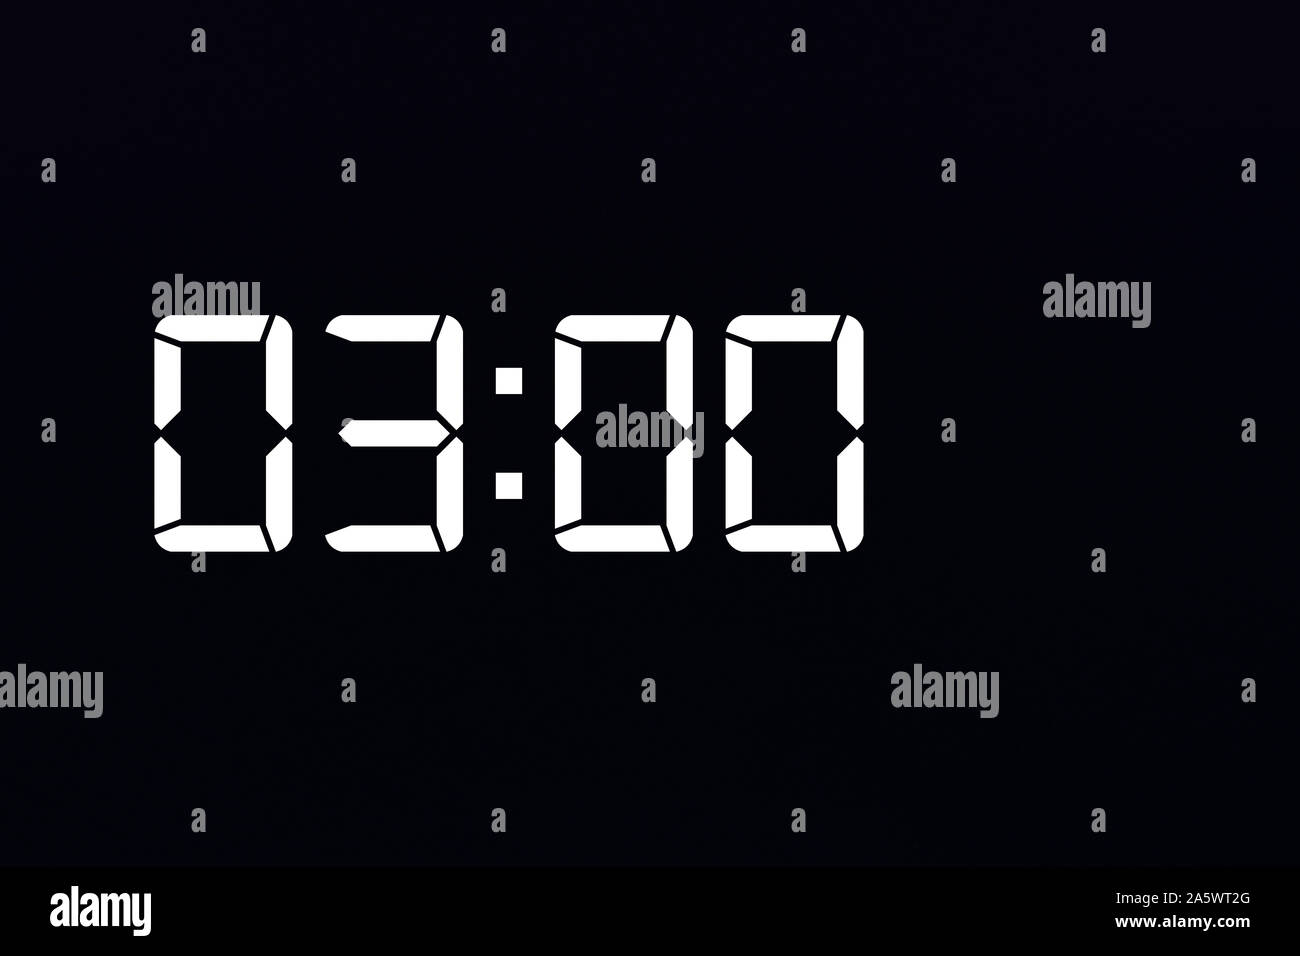 Mostrar el tiempo 03:00 reloj digital con LED blanca sobre fondo negro aislado Foto de stock